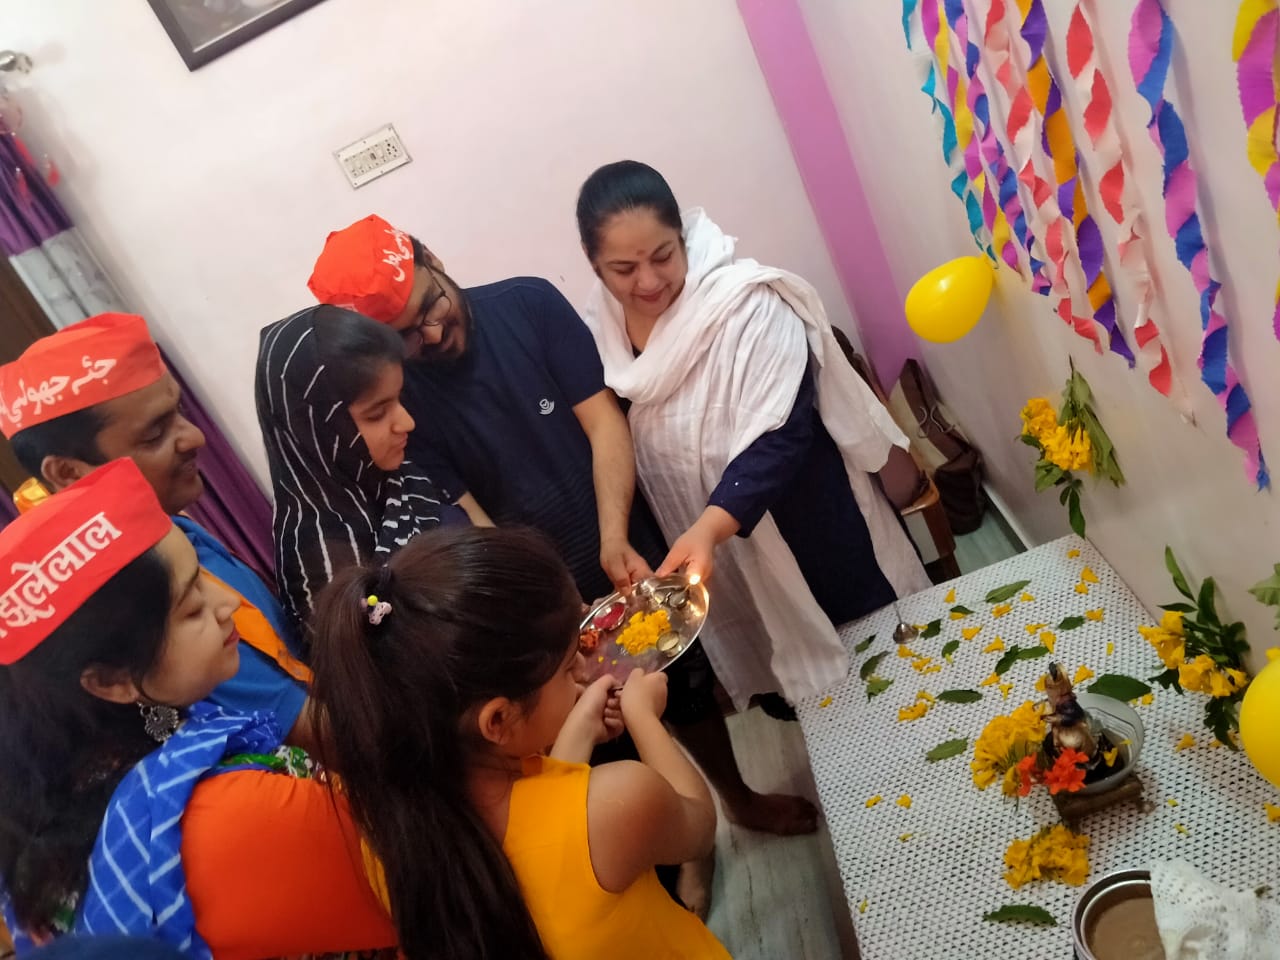 शक्तिनगर मे घरो चेट्रीचण्ड उत्सव मनाया